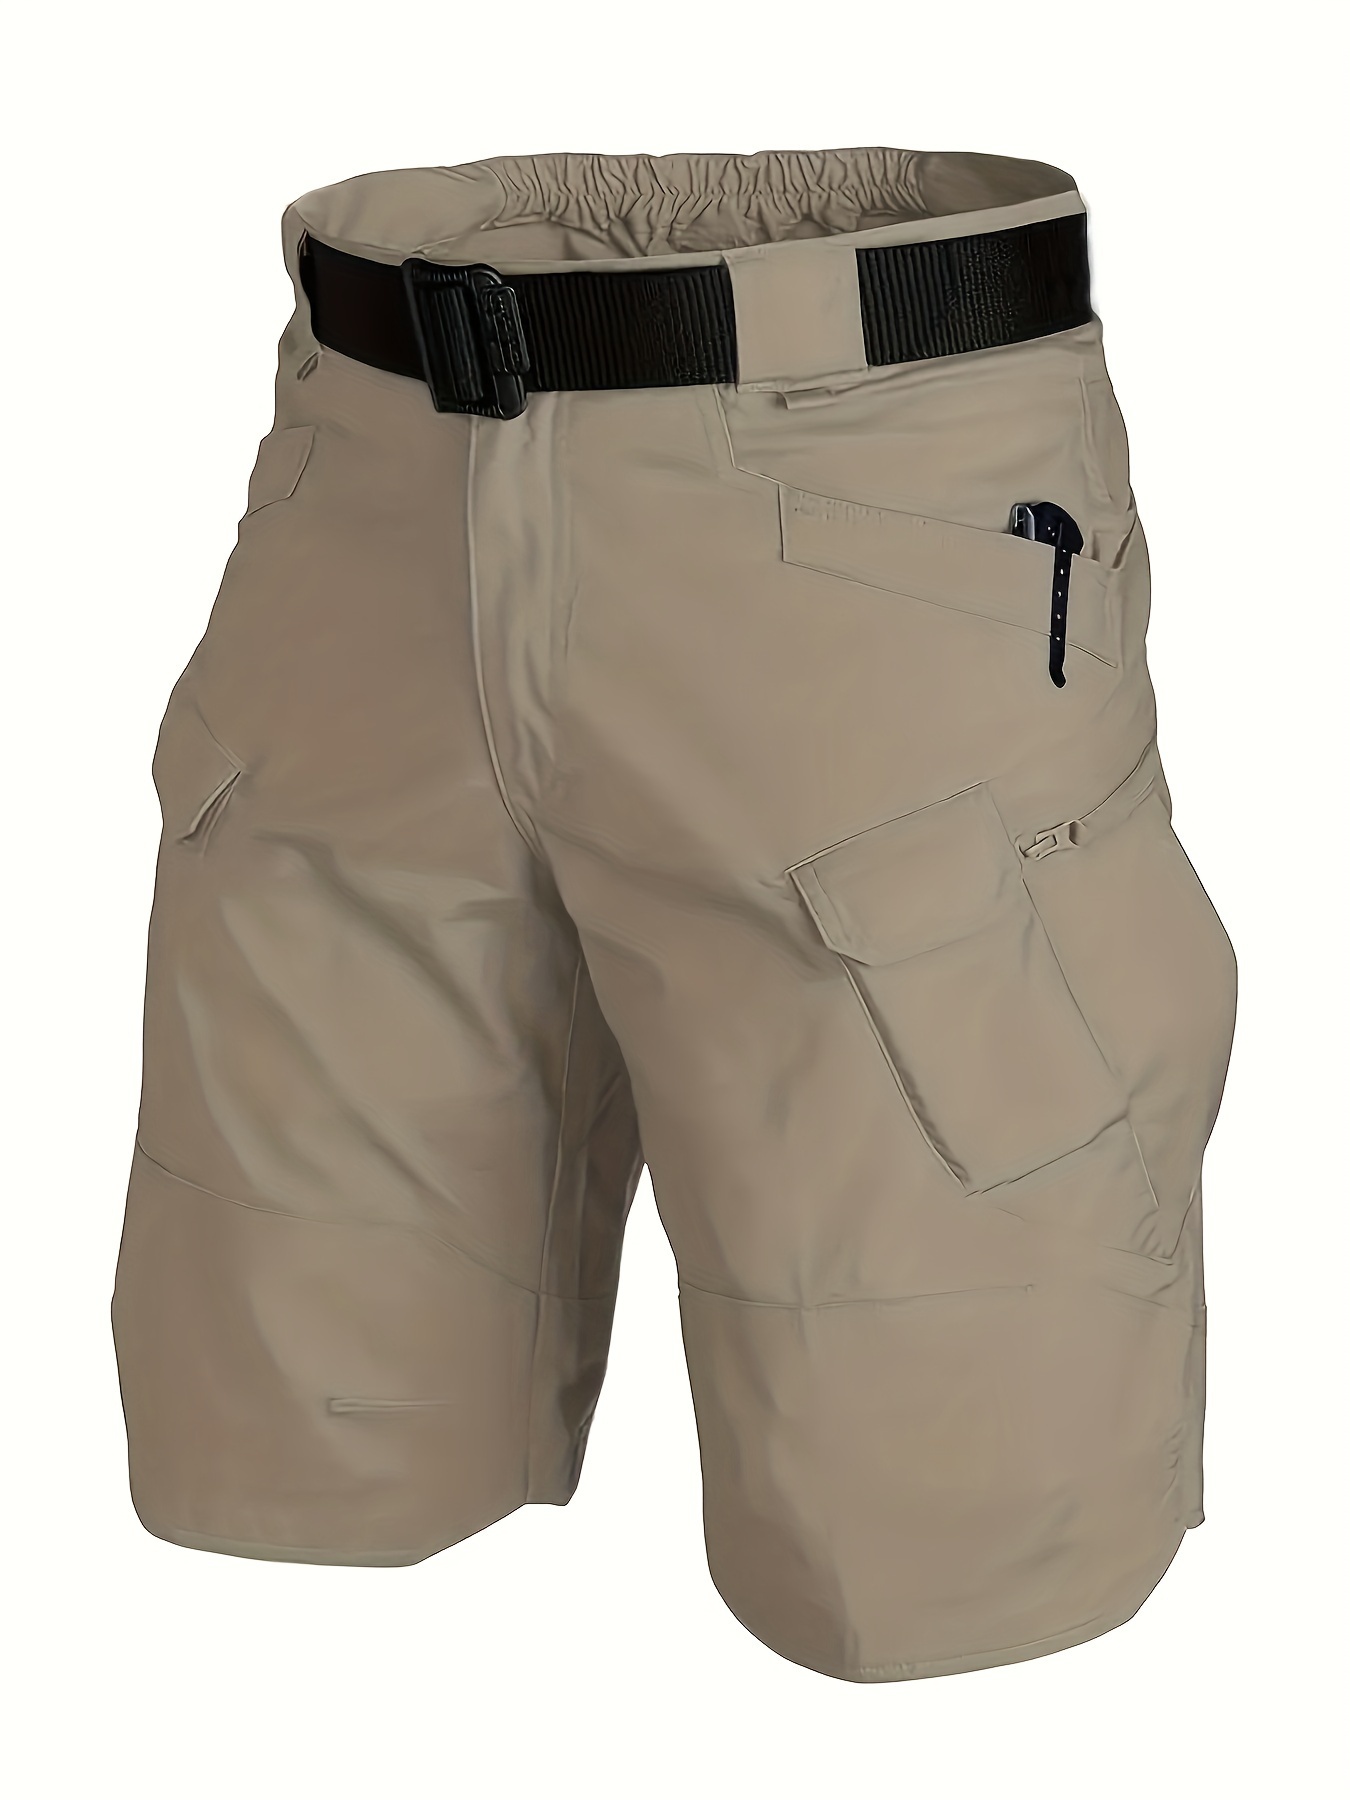 Pantalones Impermeables Tácticos Militares [s]